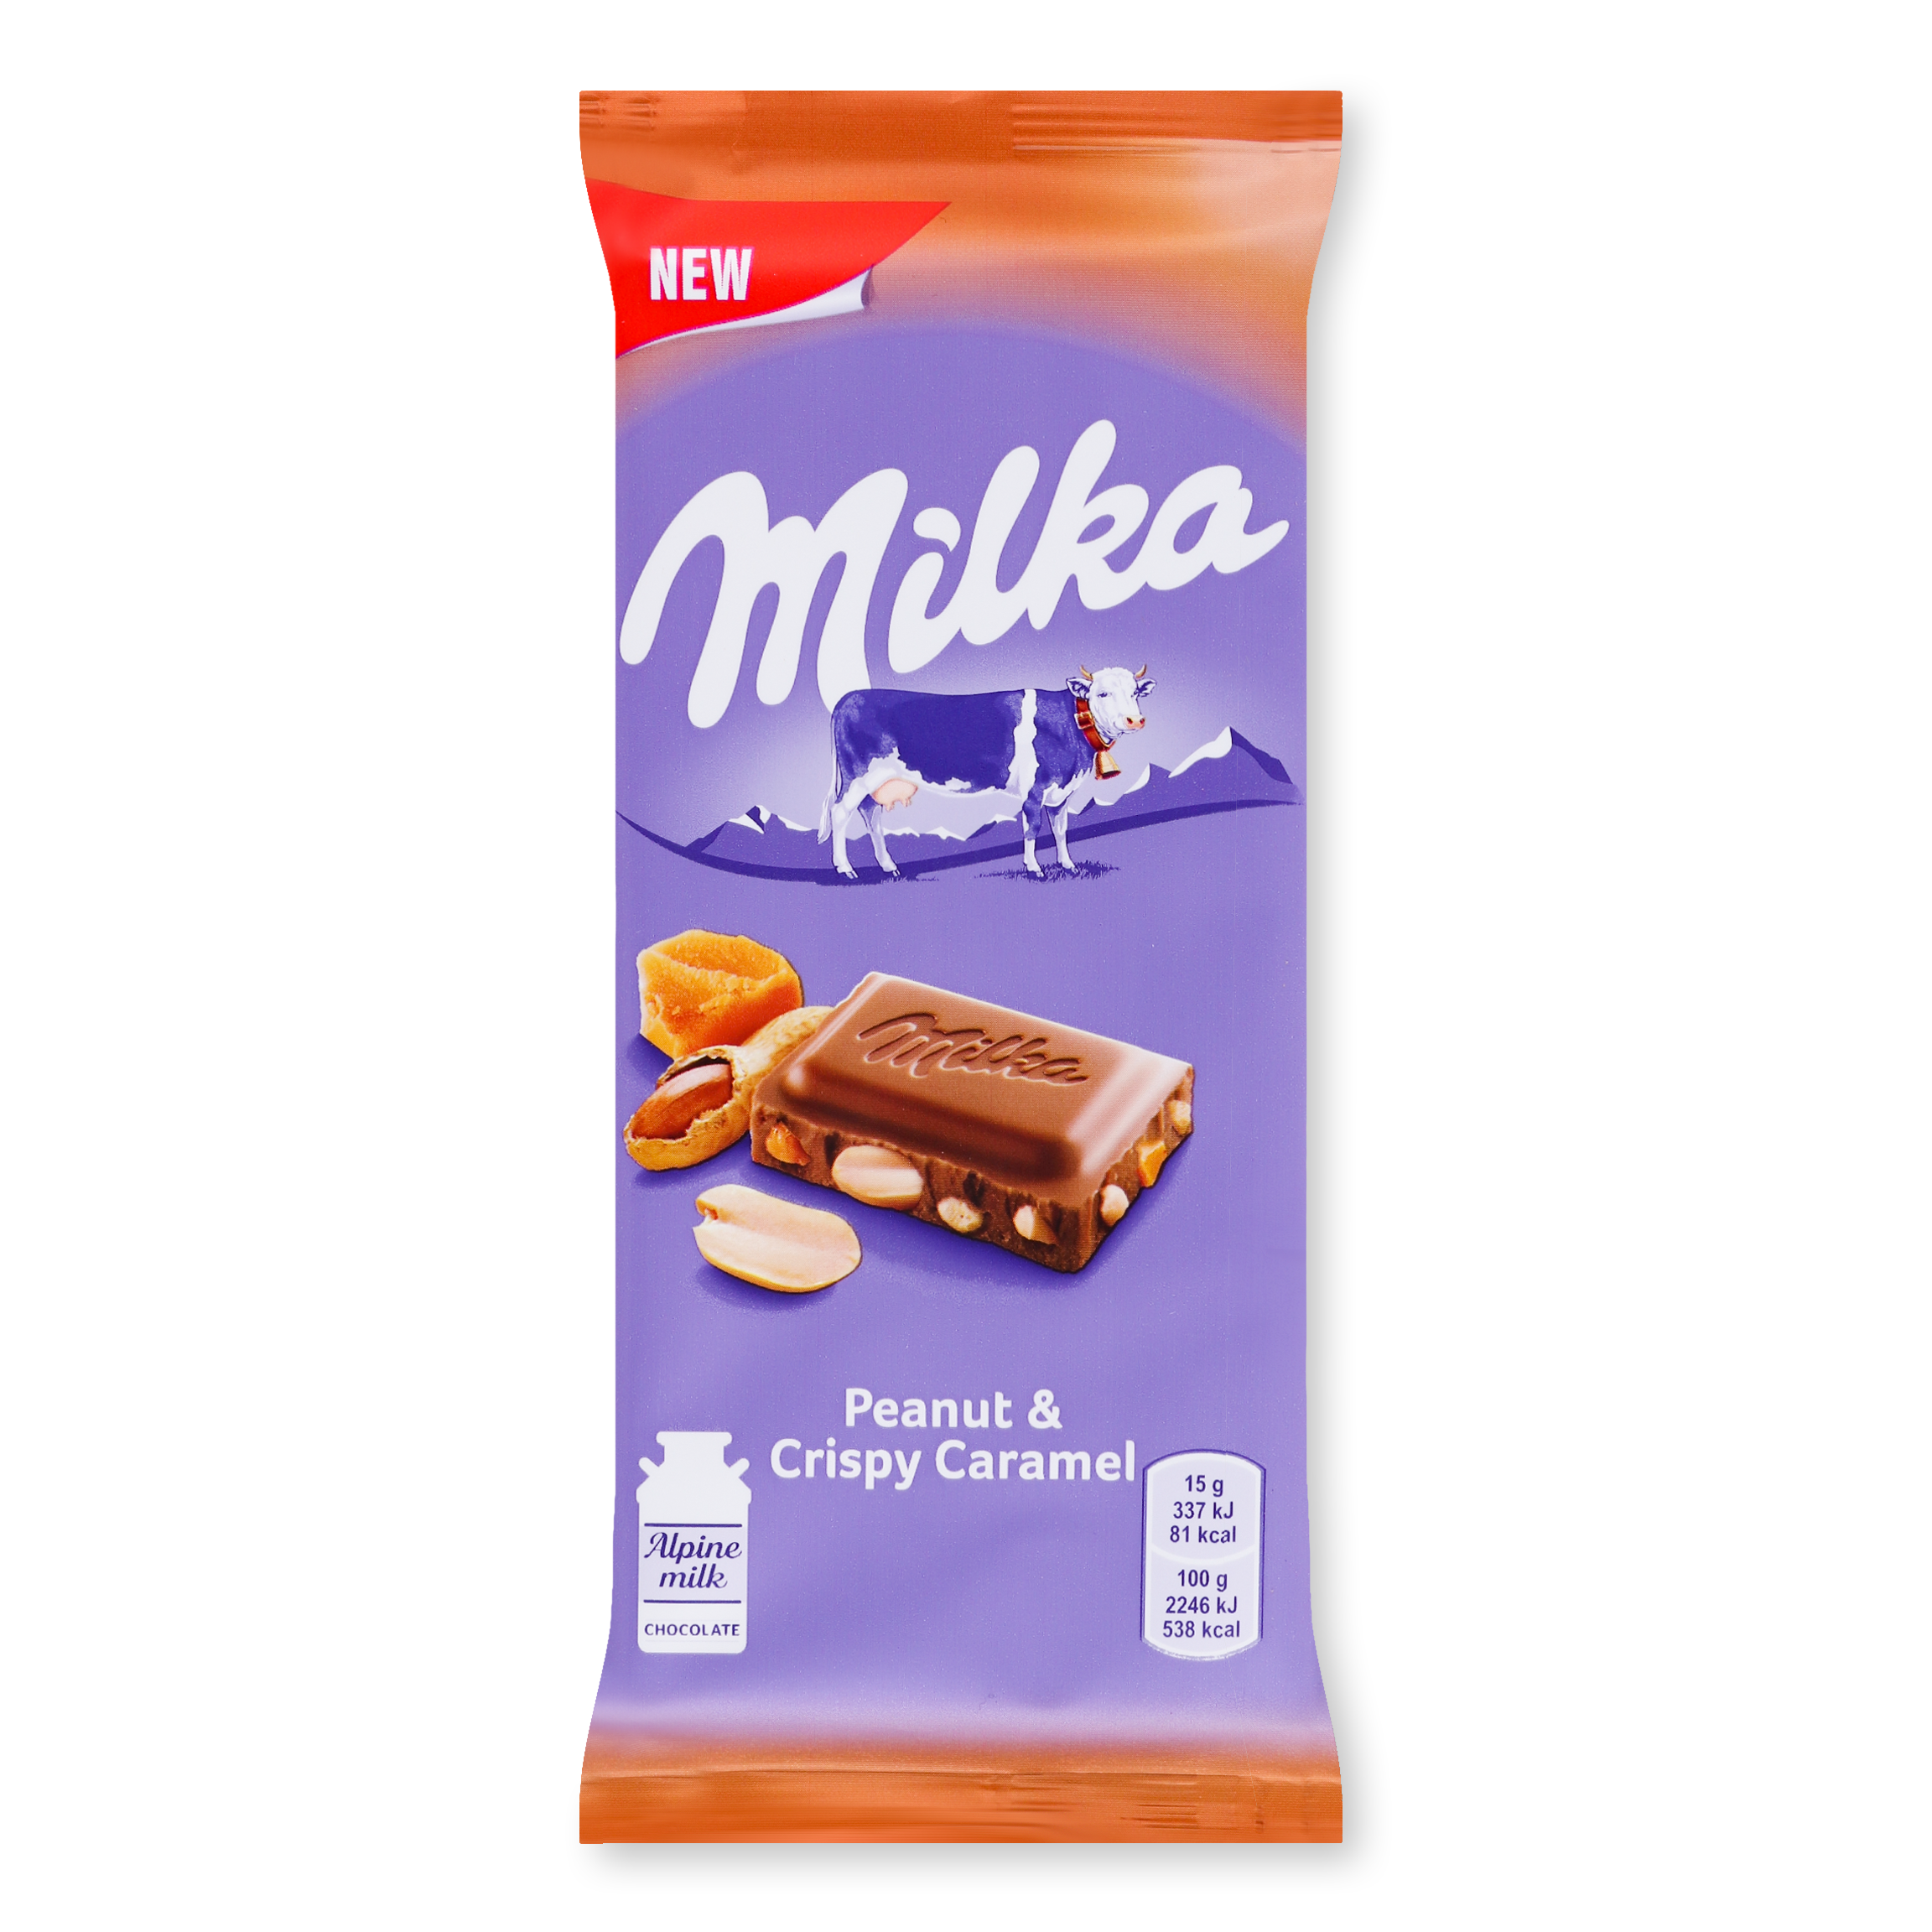 Шоколад молочный Milka карамель с арахисом 90г